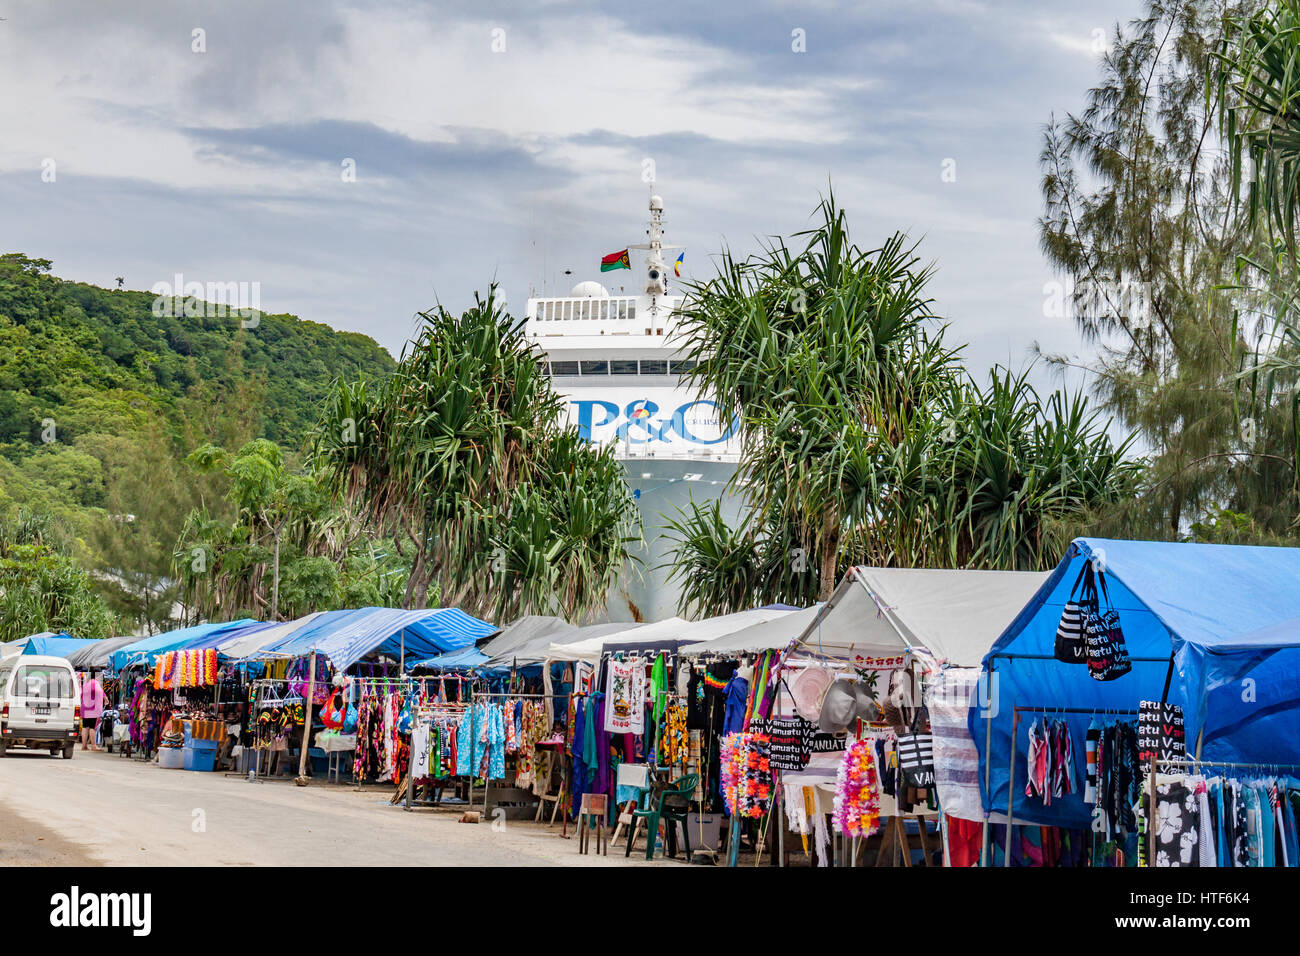 Les étals du marché à l'archet de P&O cruise ship vu amarré à Port Vila, Vanuatu. Banque D'Images